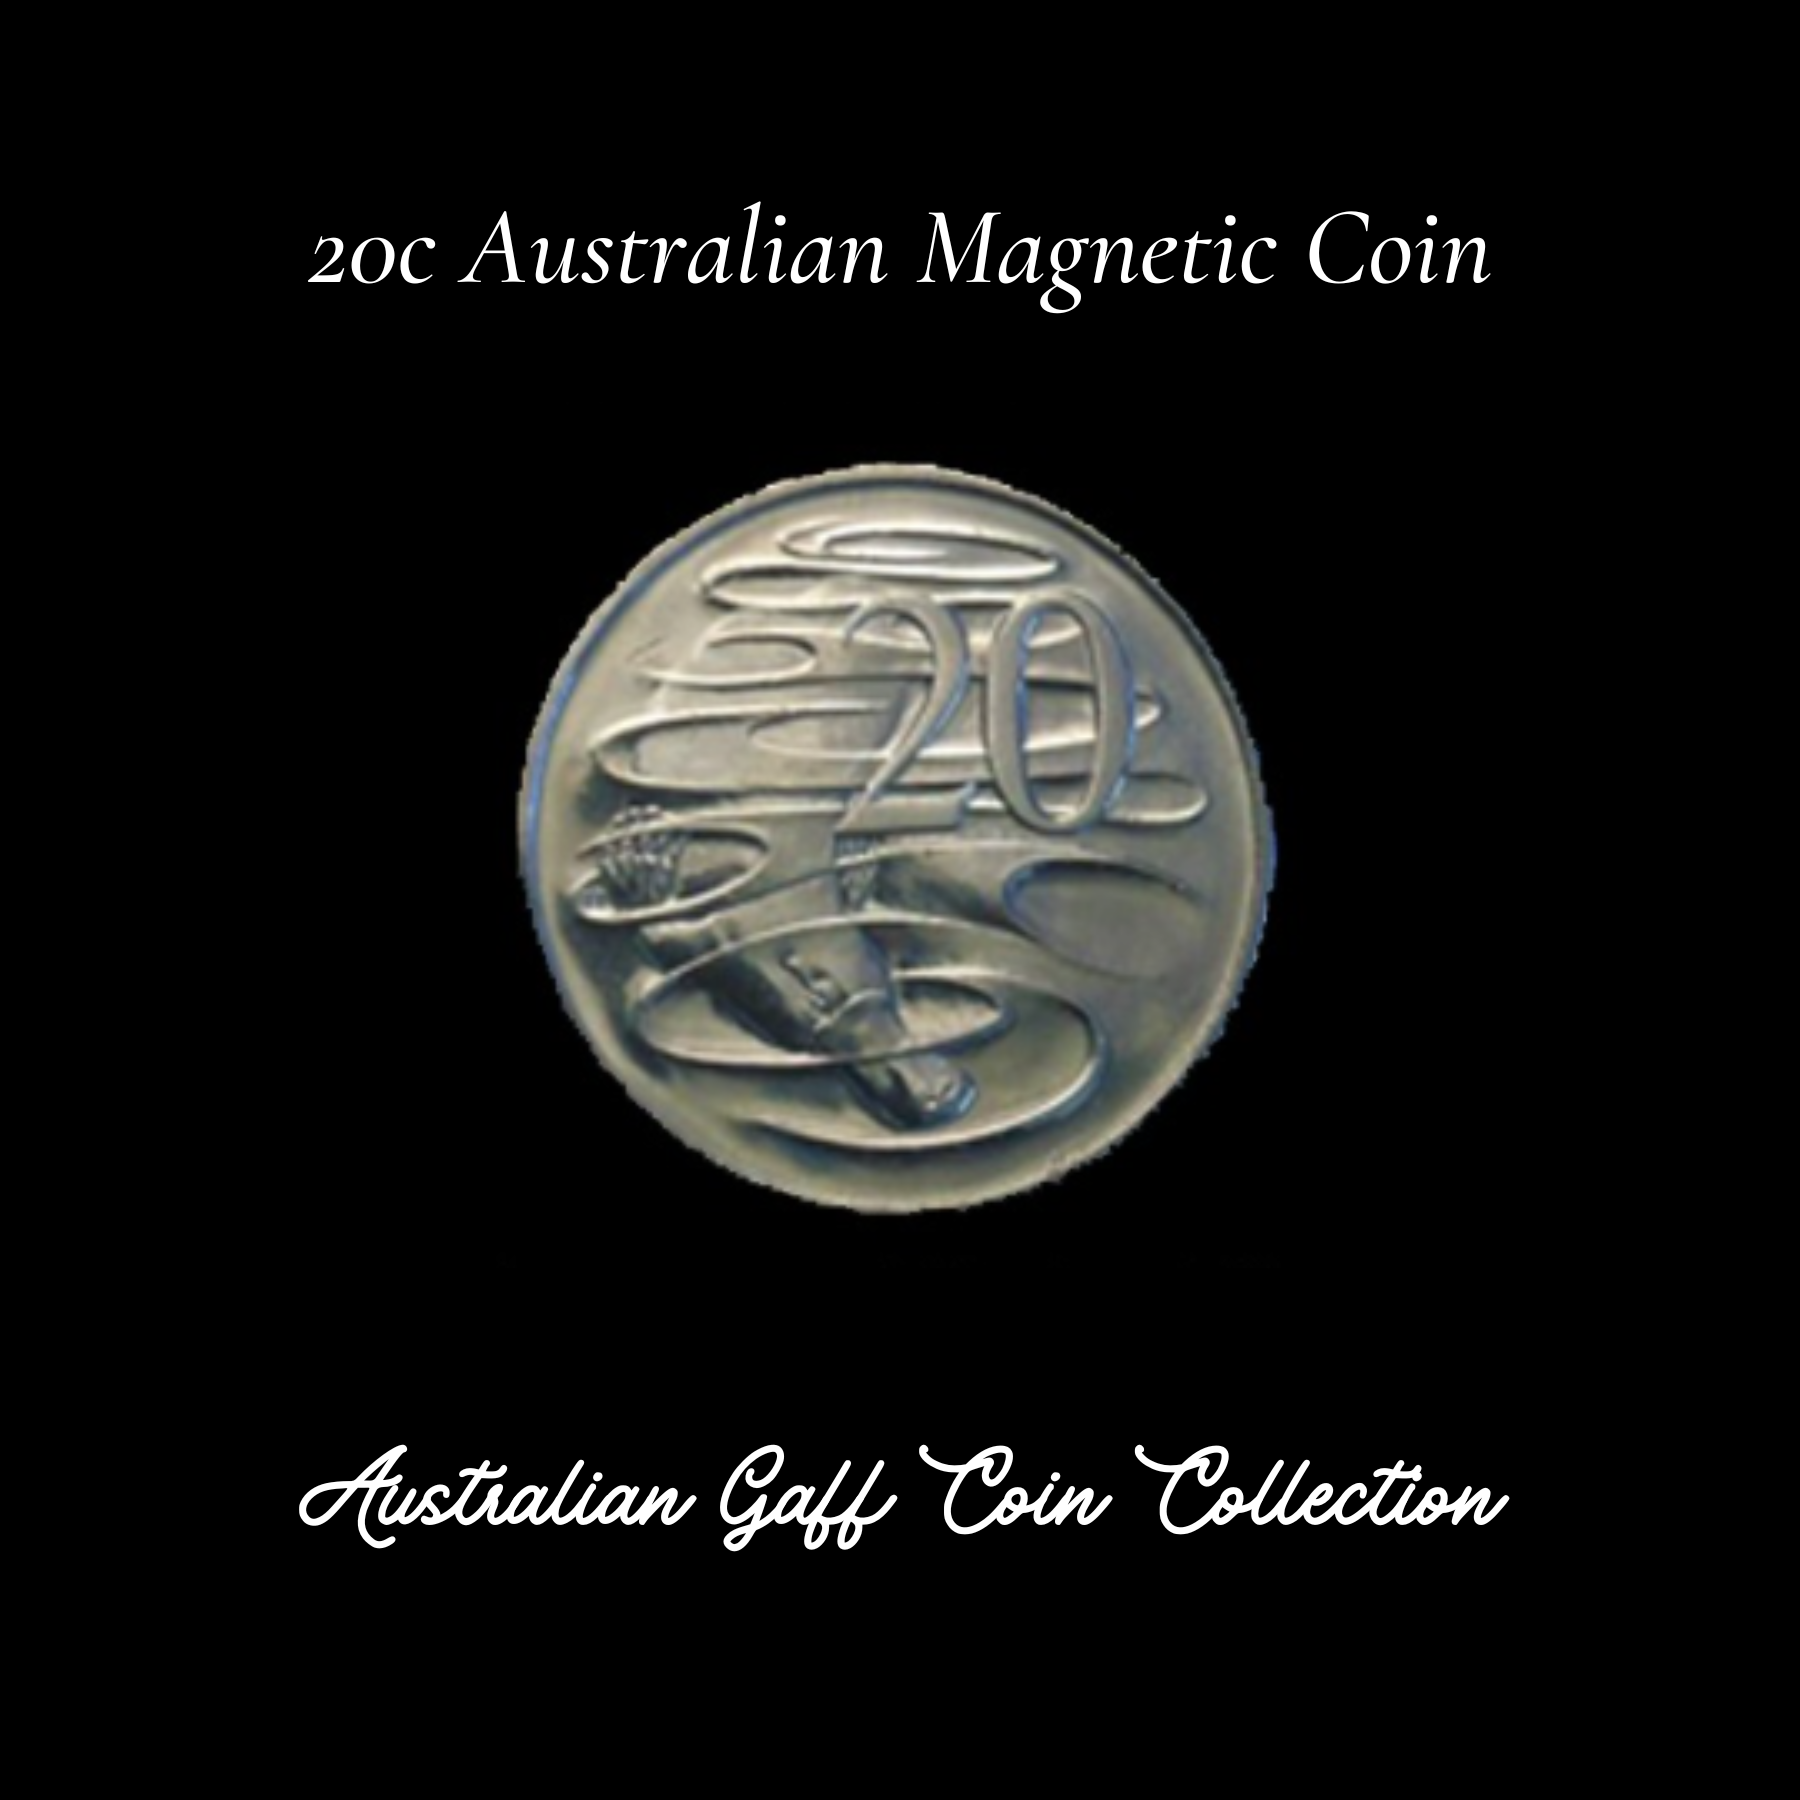 20c Australian Magnetic Coin